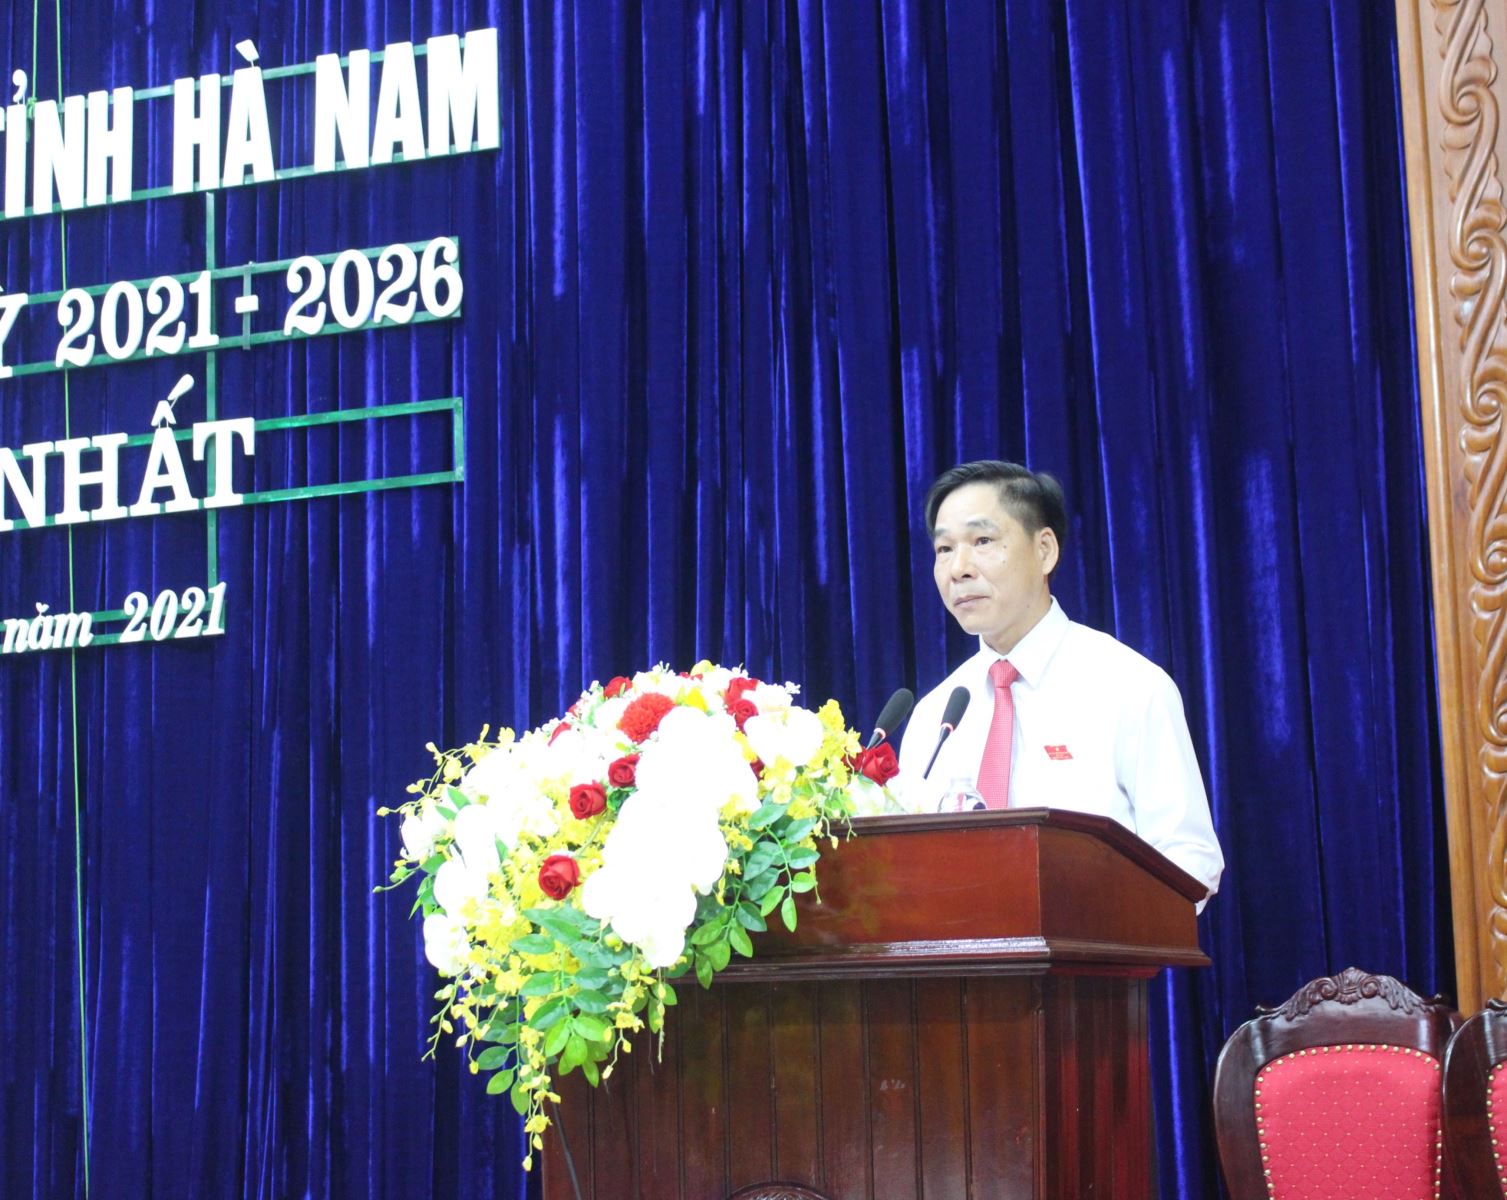 Phó Chủ tịch UBND tỉnh Nguyễn Anh Chức báo cáo kết quả bầu cử